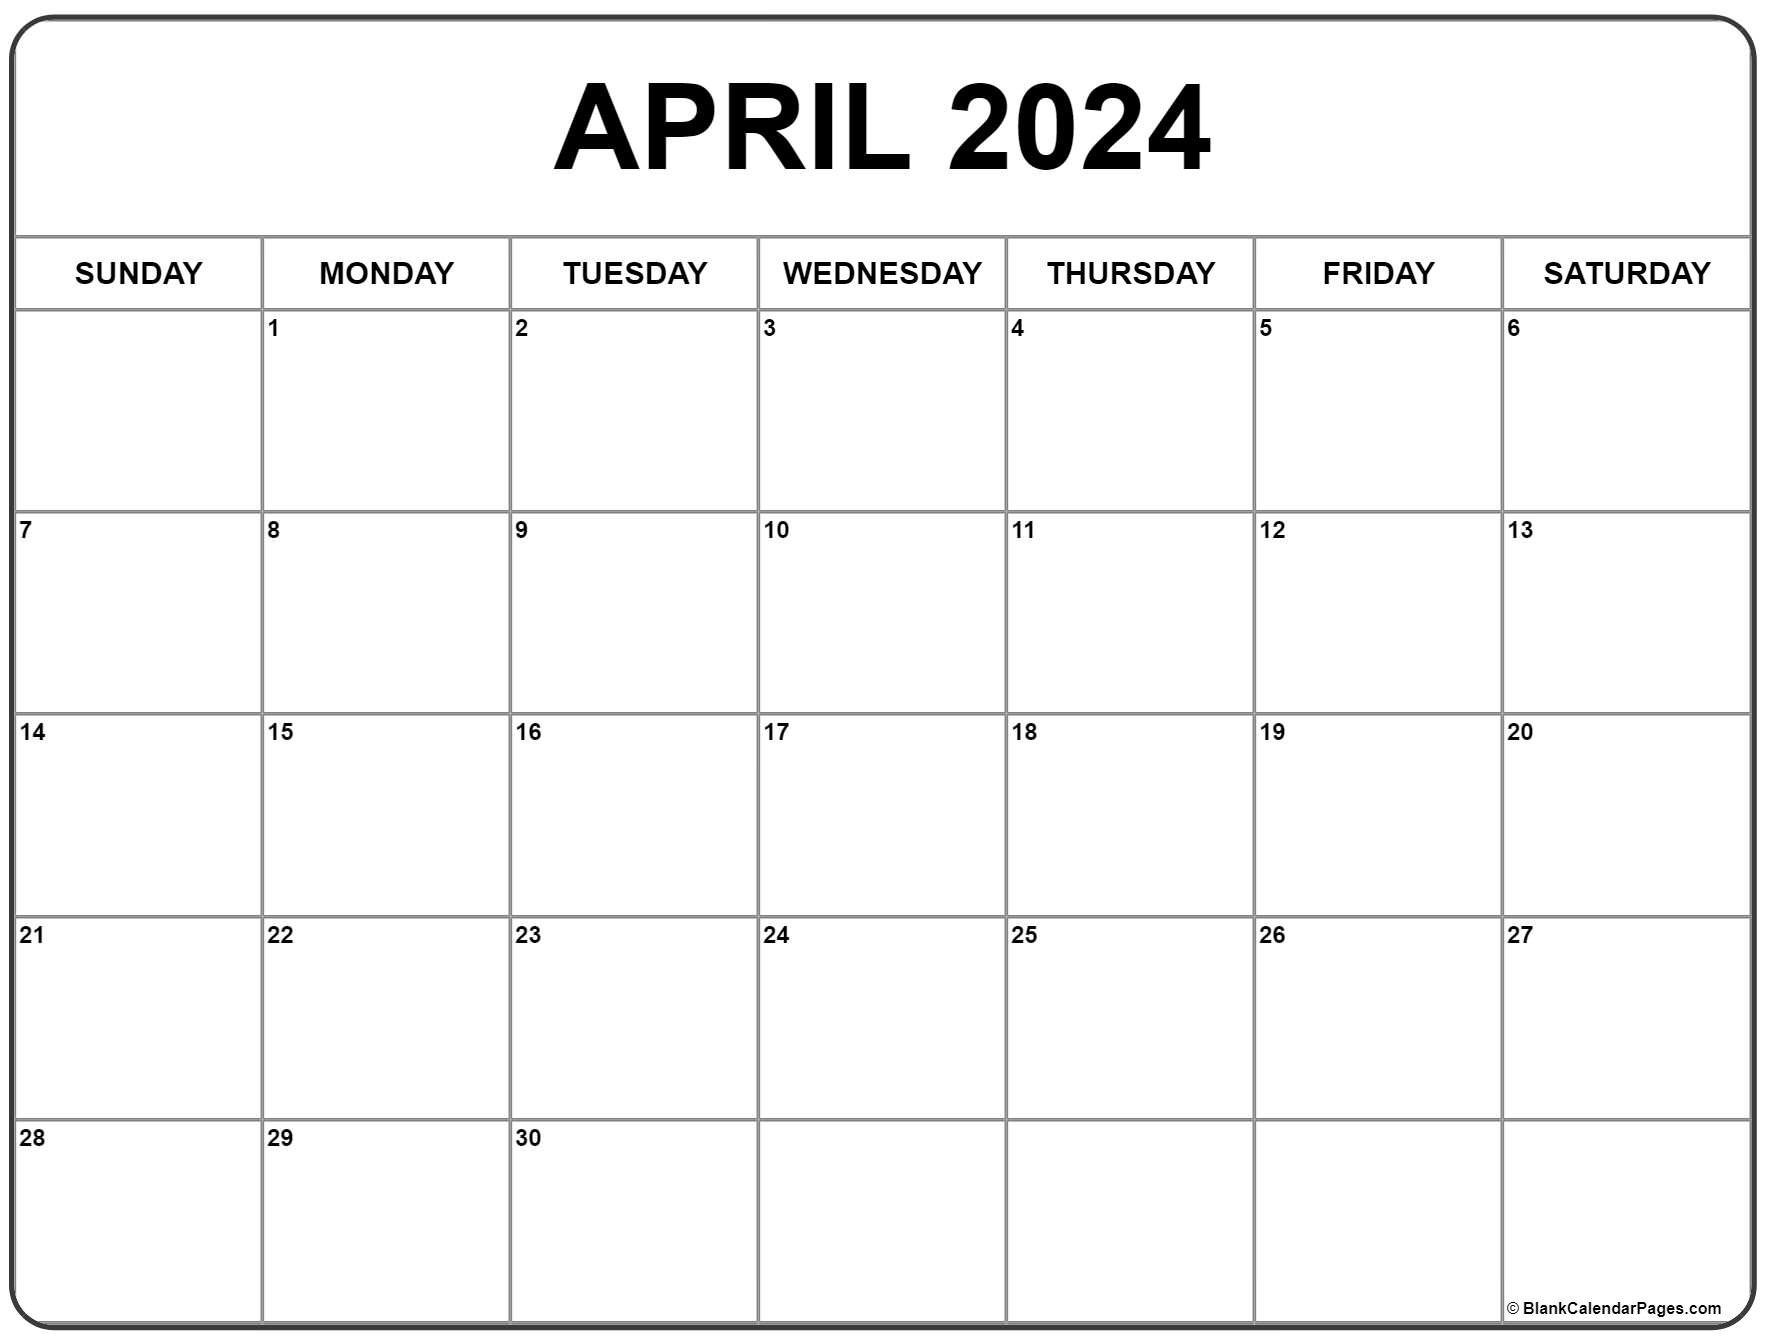 April 2024 Calendar | Free Printable Calendar for Free Calendar Printable April 2024